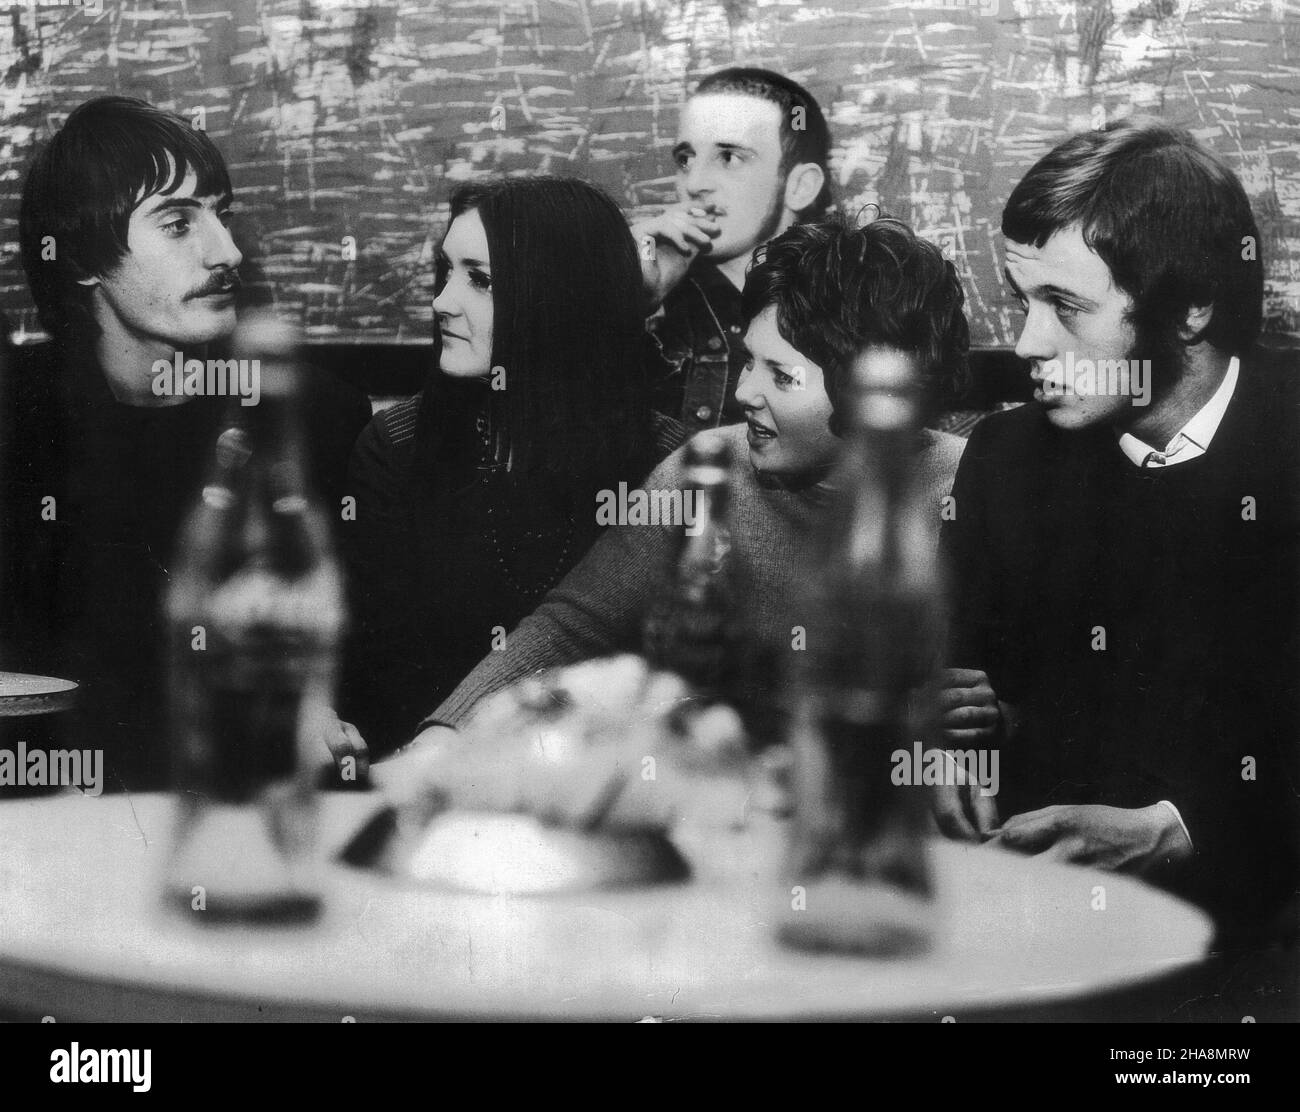 Etudiants socialisation Grande-Bretagne 1969 adolescents adolescents des années 1960 jeunes royaume-uni PHOTO DE DAVID BAGNALL Banque D'Images